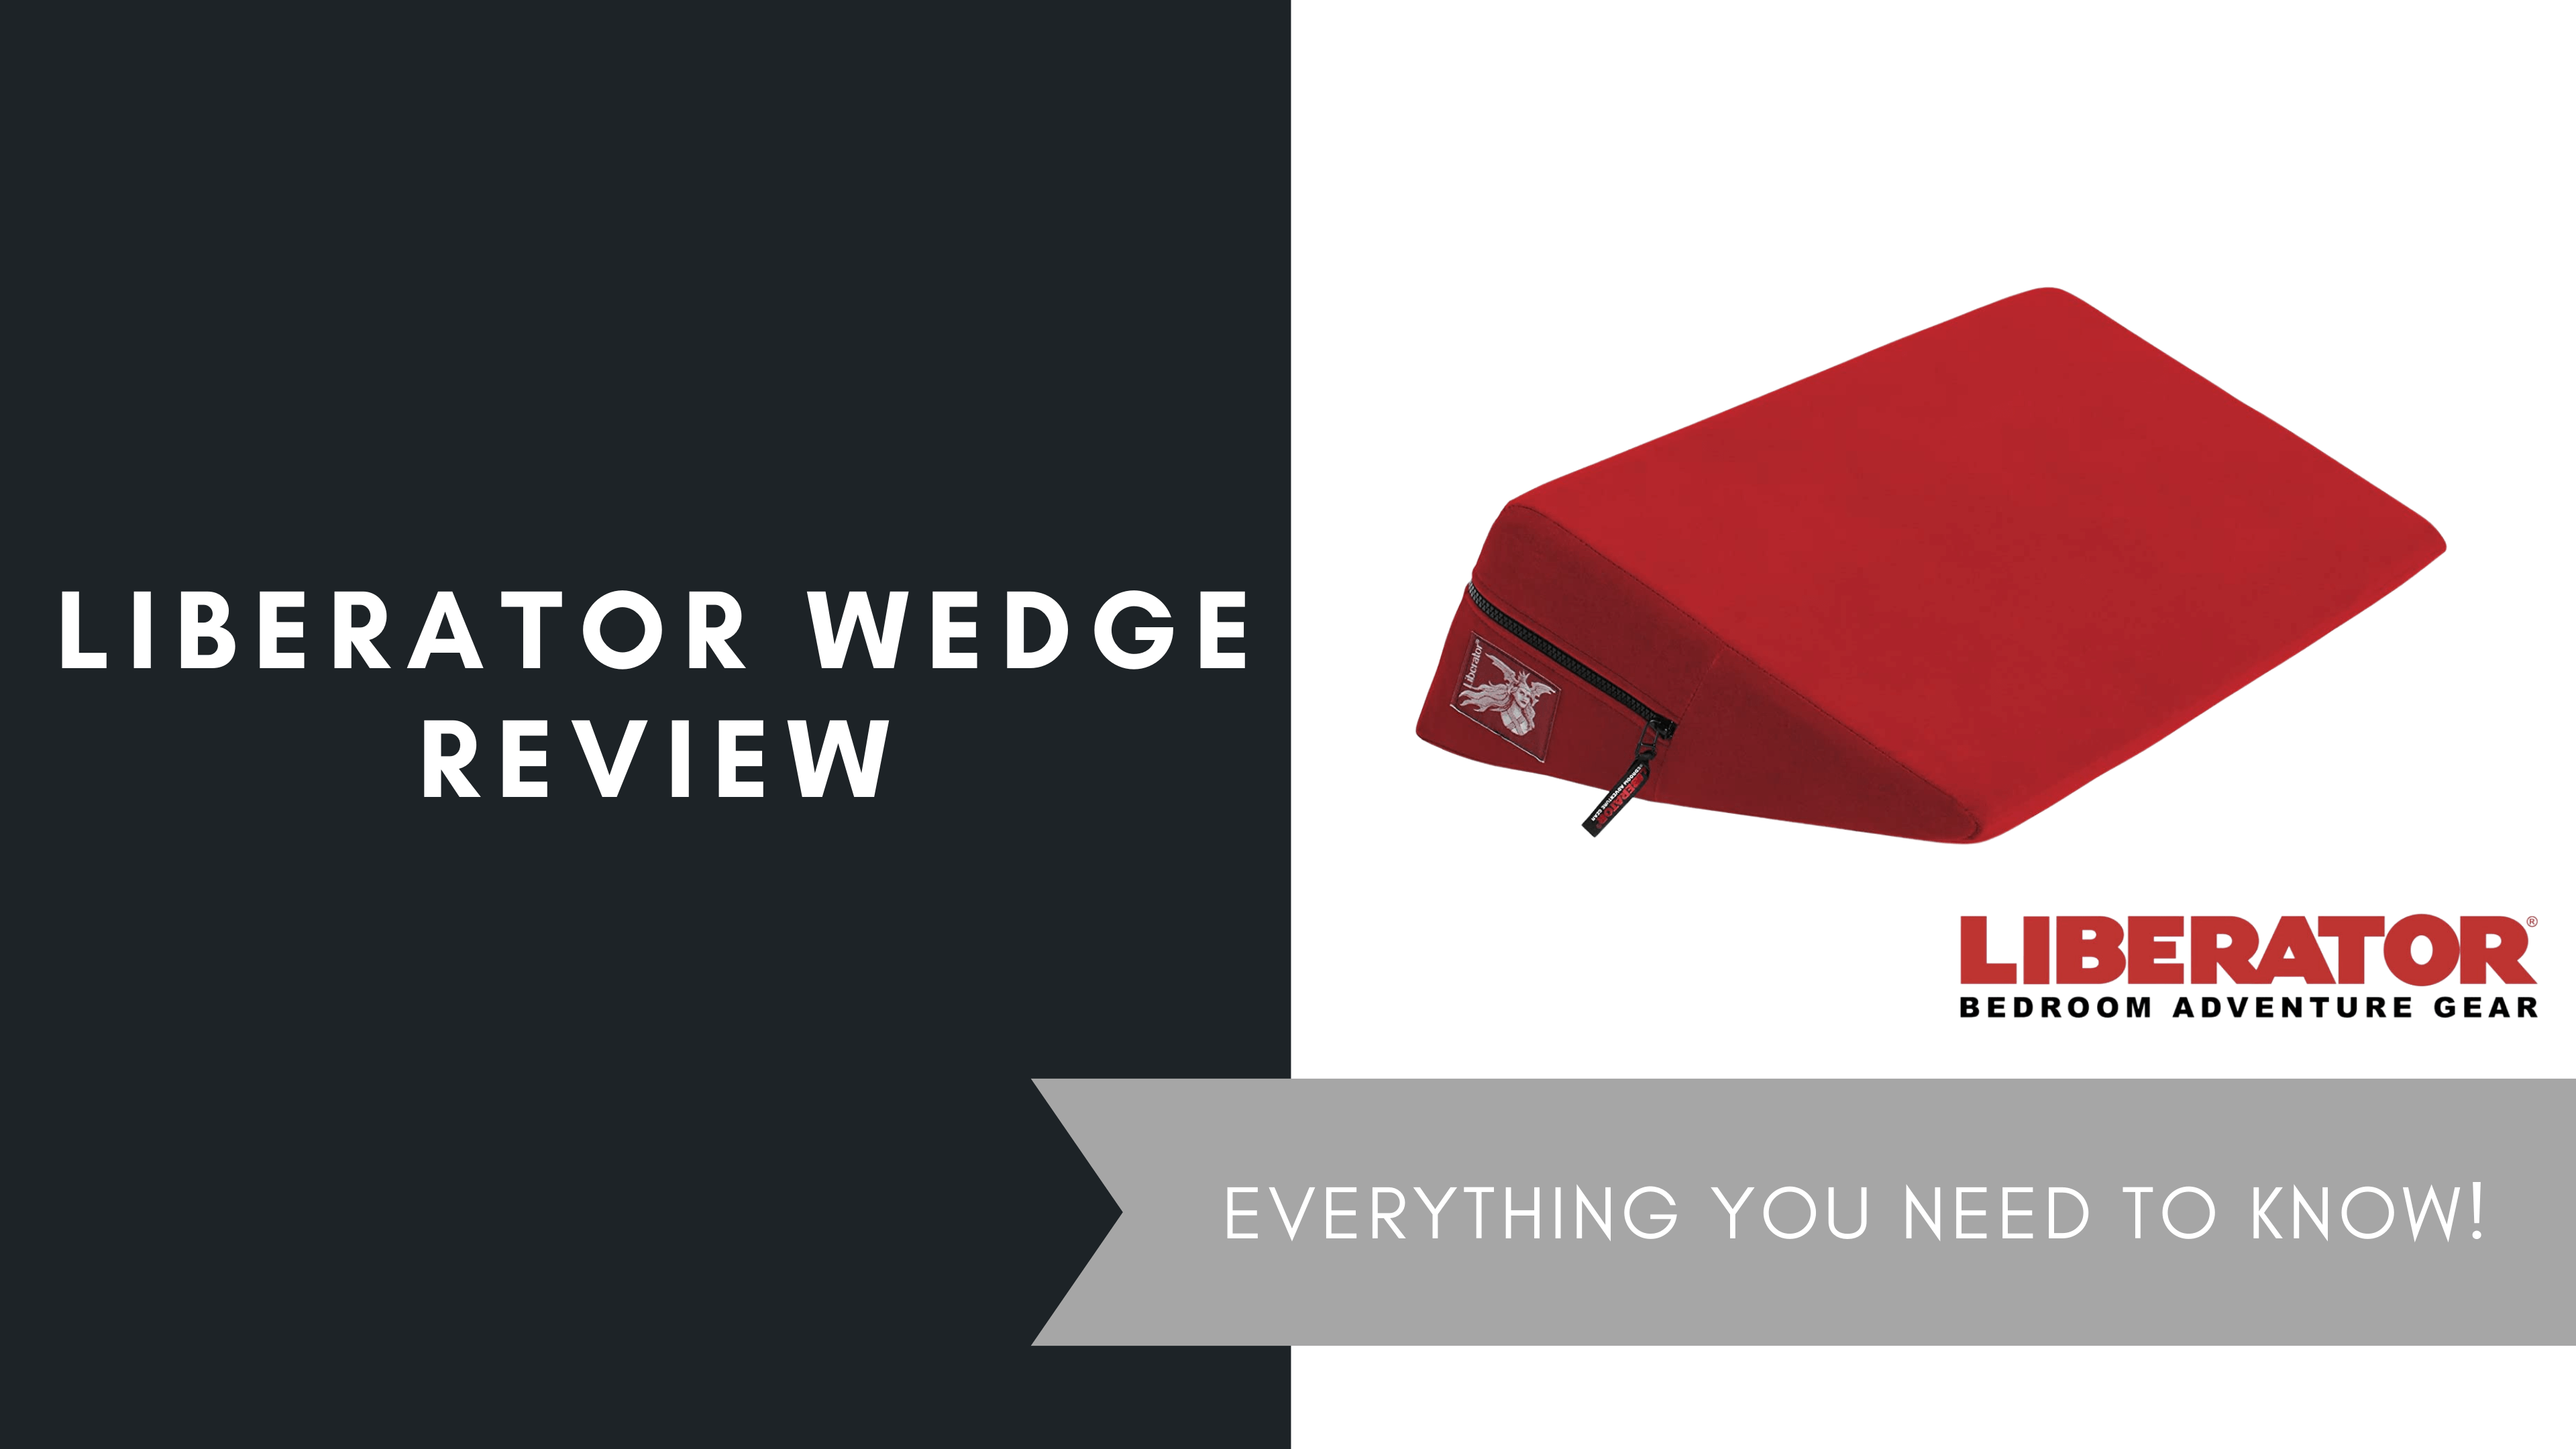 Liberator Wedge Review, June 2021